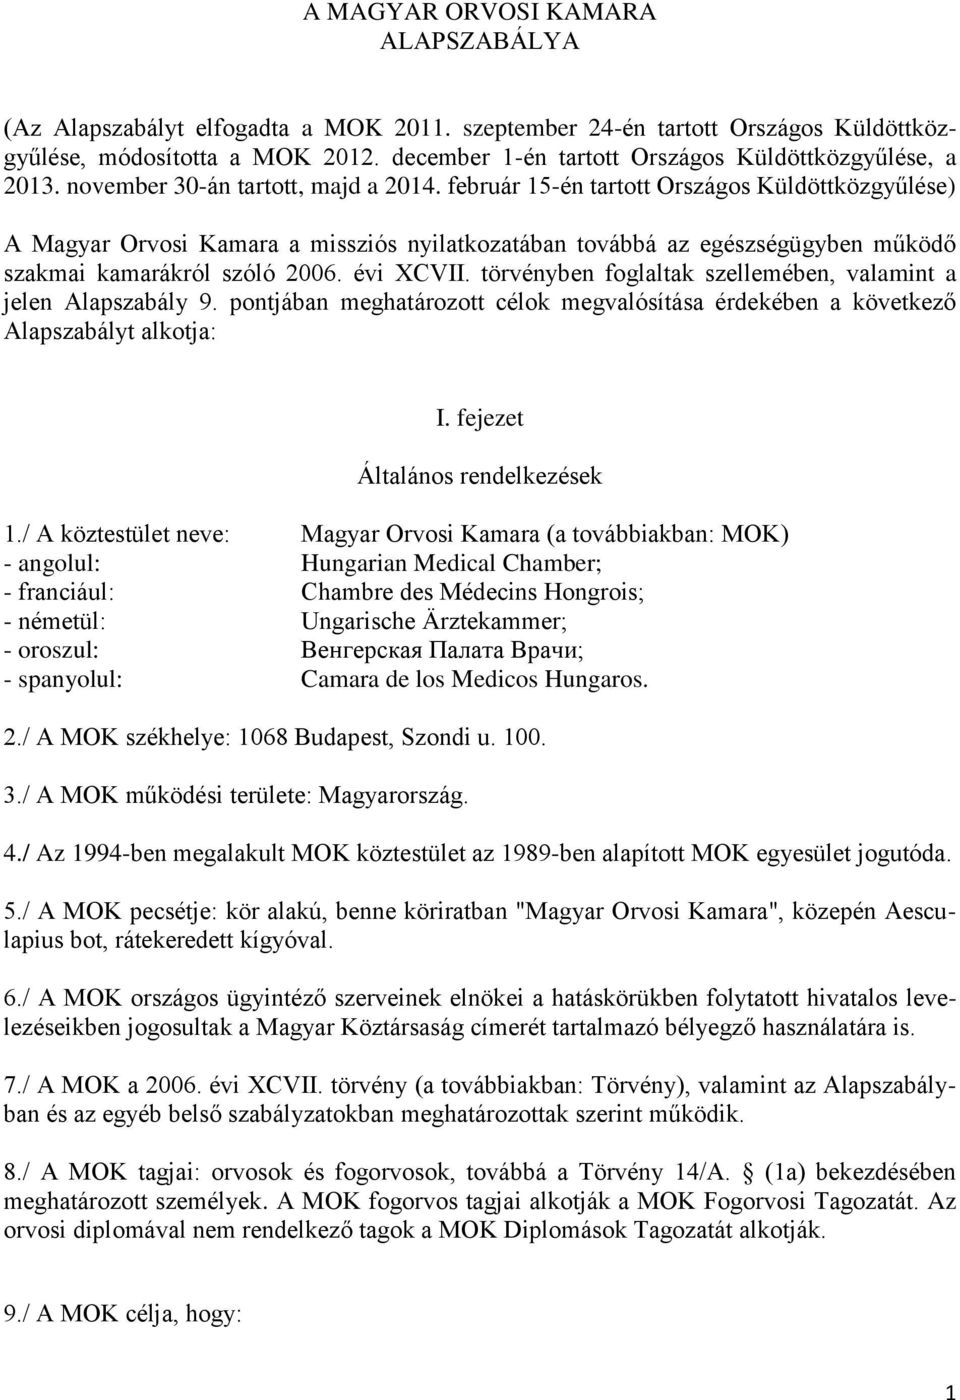 február 15-én tartott Országos Küldöttközgyűlése) A Magyar Orvosi Kamara a missziós nyilatkozatában továbbá az egészségügyben működő szakmai kamarákról szóló 2006. évi XCVII.